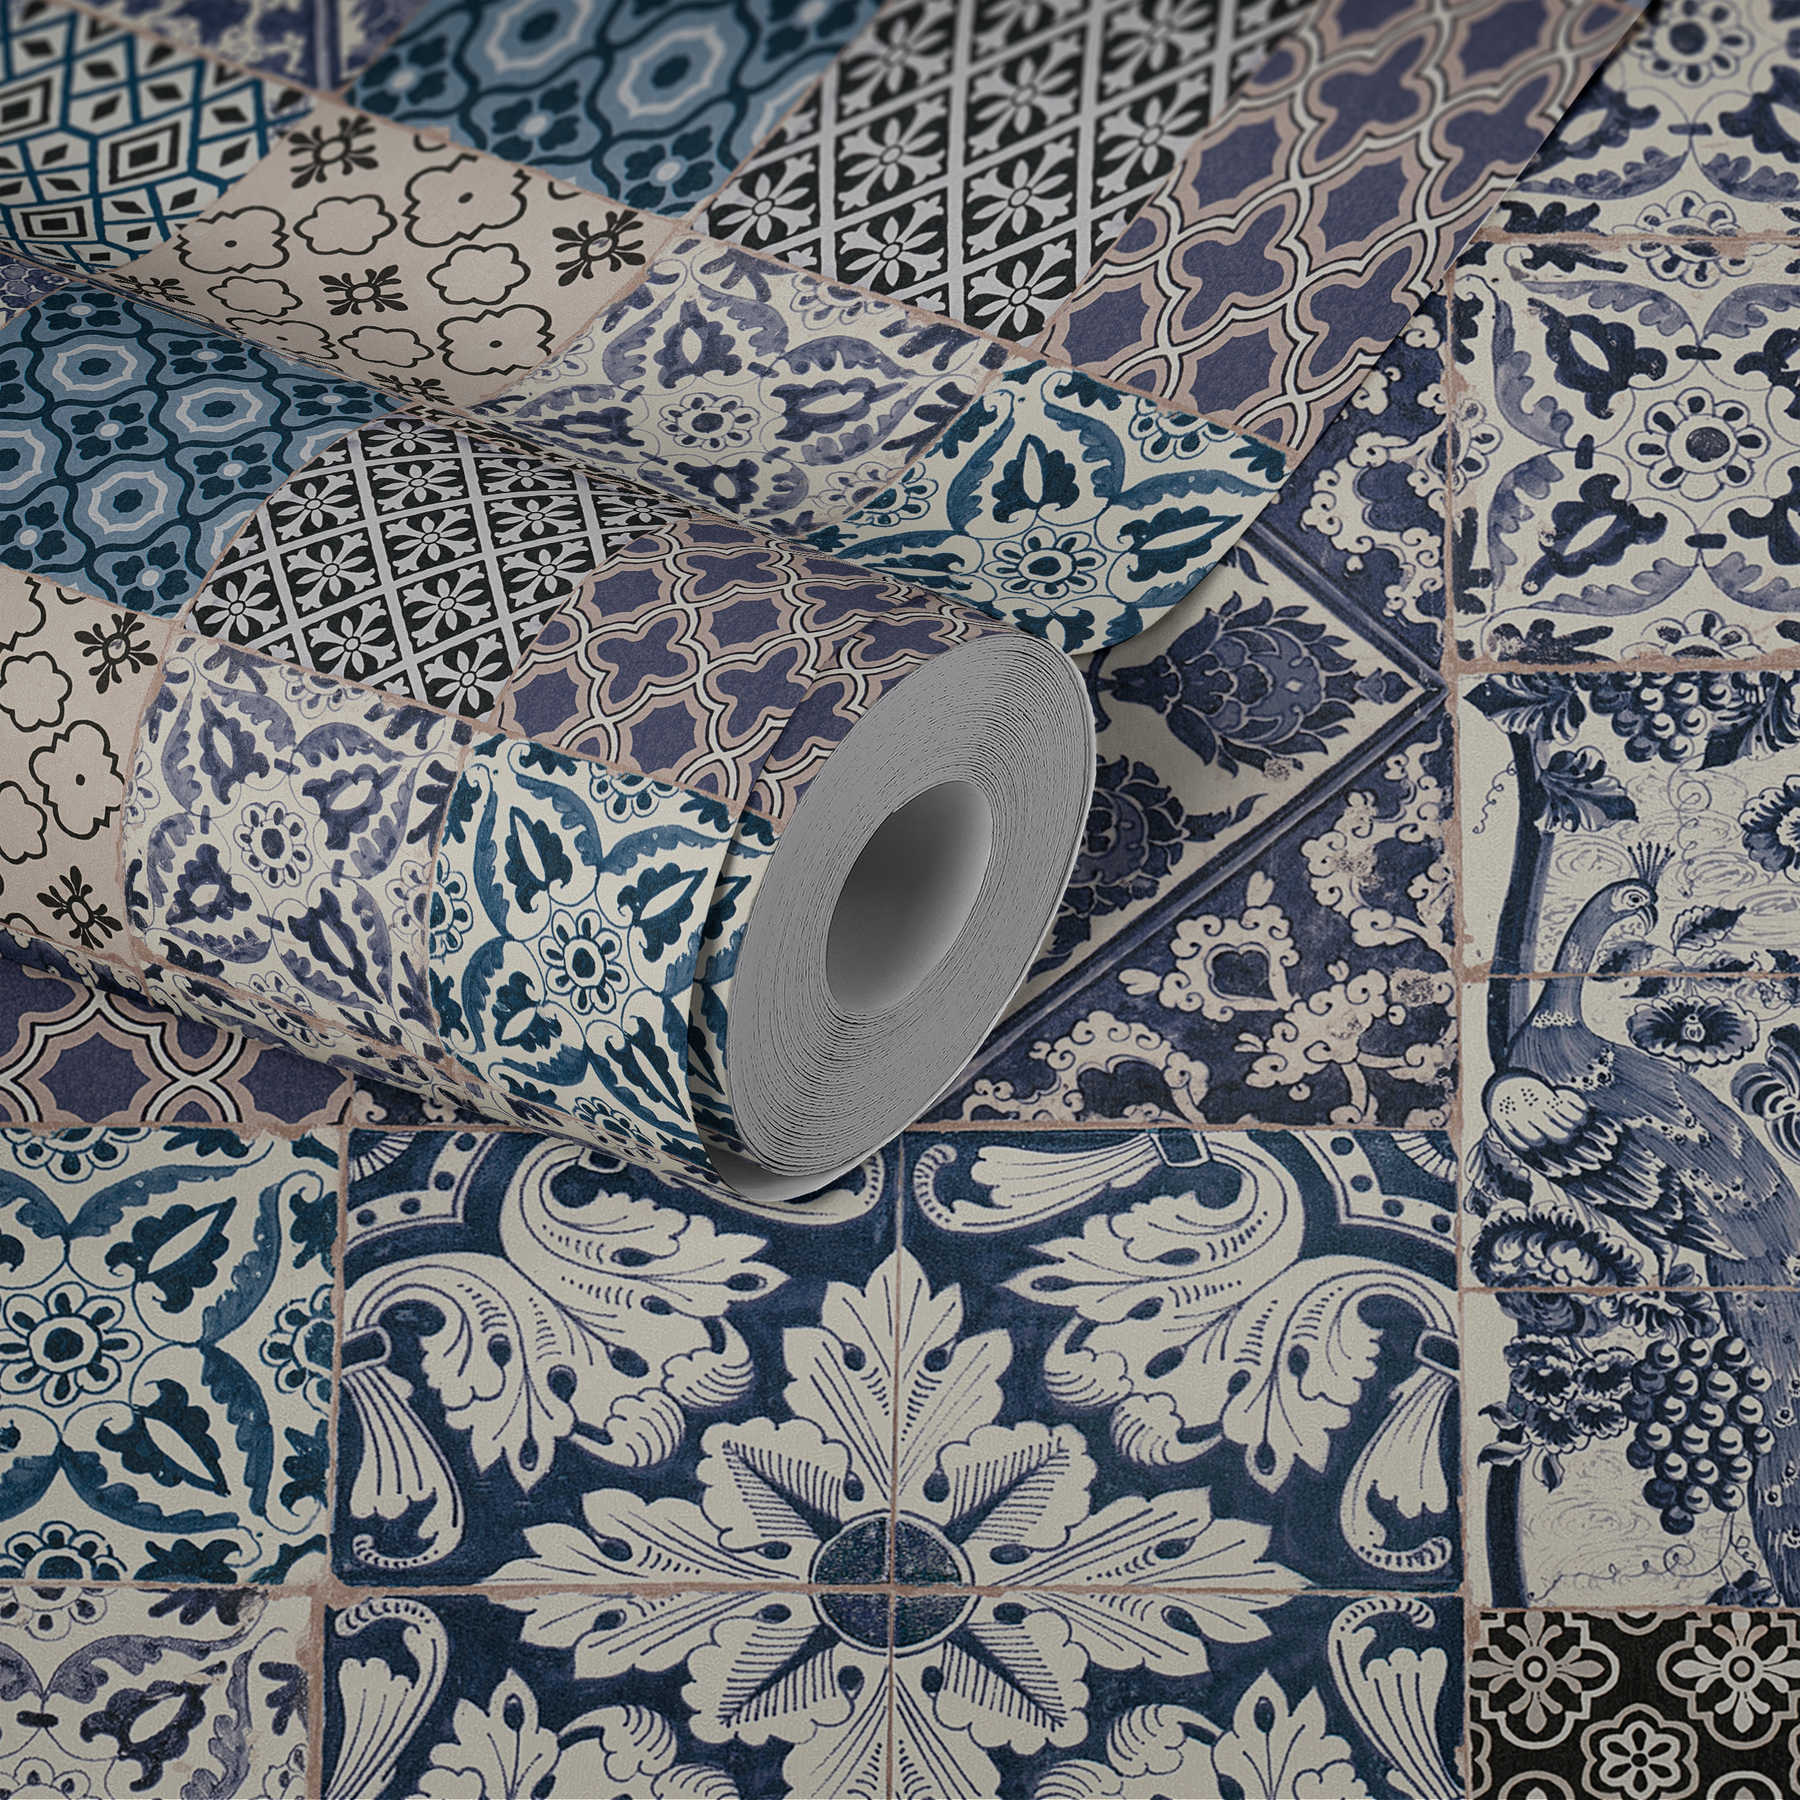             Tapete in Fliesen & Mosaik Design – Blau, Creme, Weiß
        